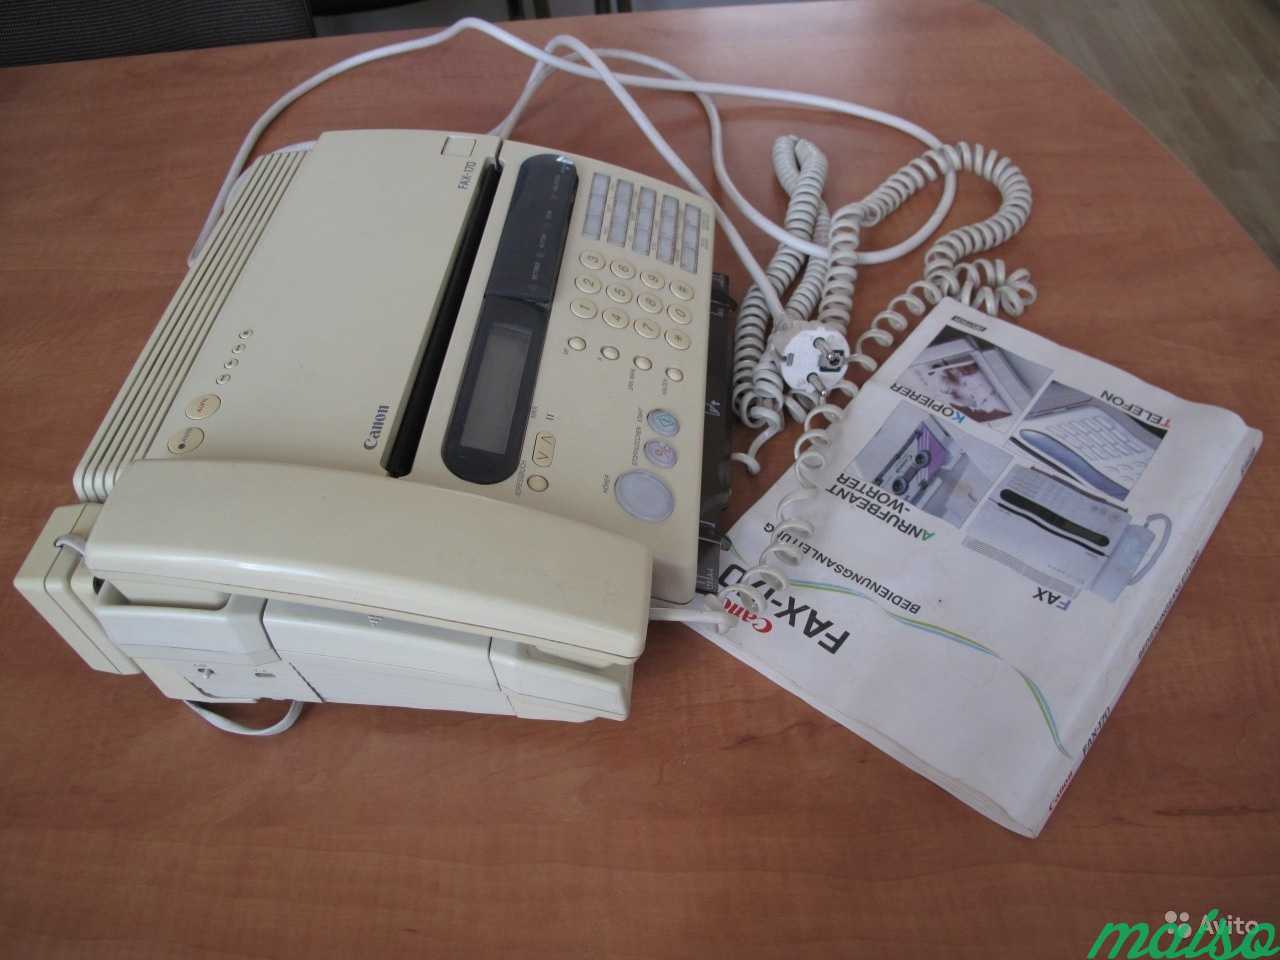 Раритетный телефон-факс canon Fax-170 c автоответч в Санкт-Петербурге. Фото 2